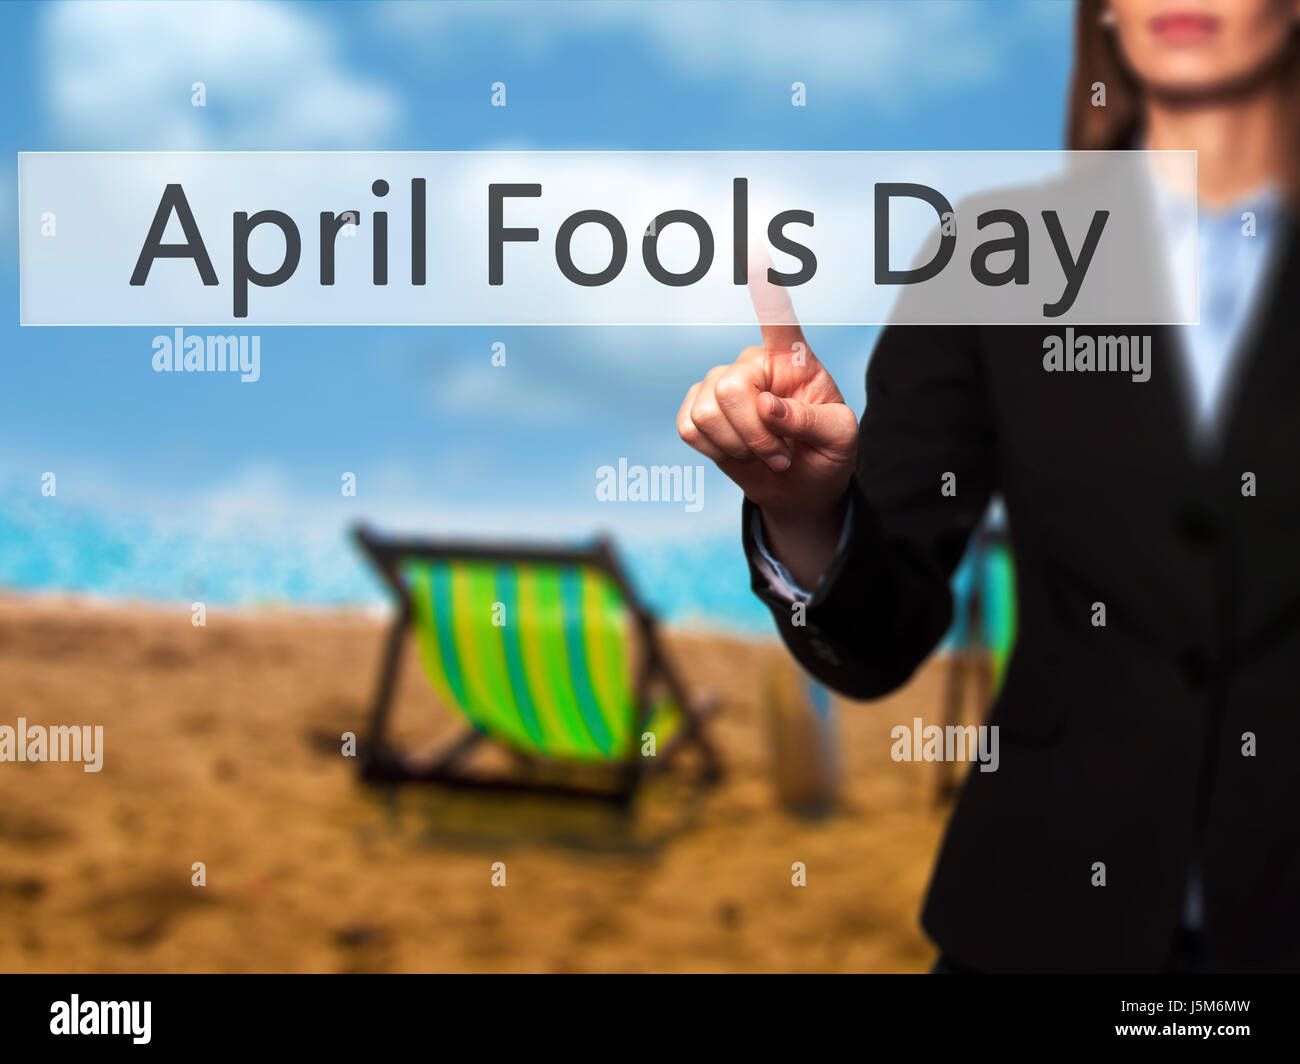 April Fools Day - Lado hembra aislado de tocar o apuntando al botón. Concepto de negocio y la tecnología del futuro. Stock Photo Foto de stock